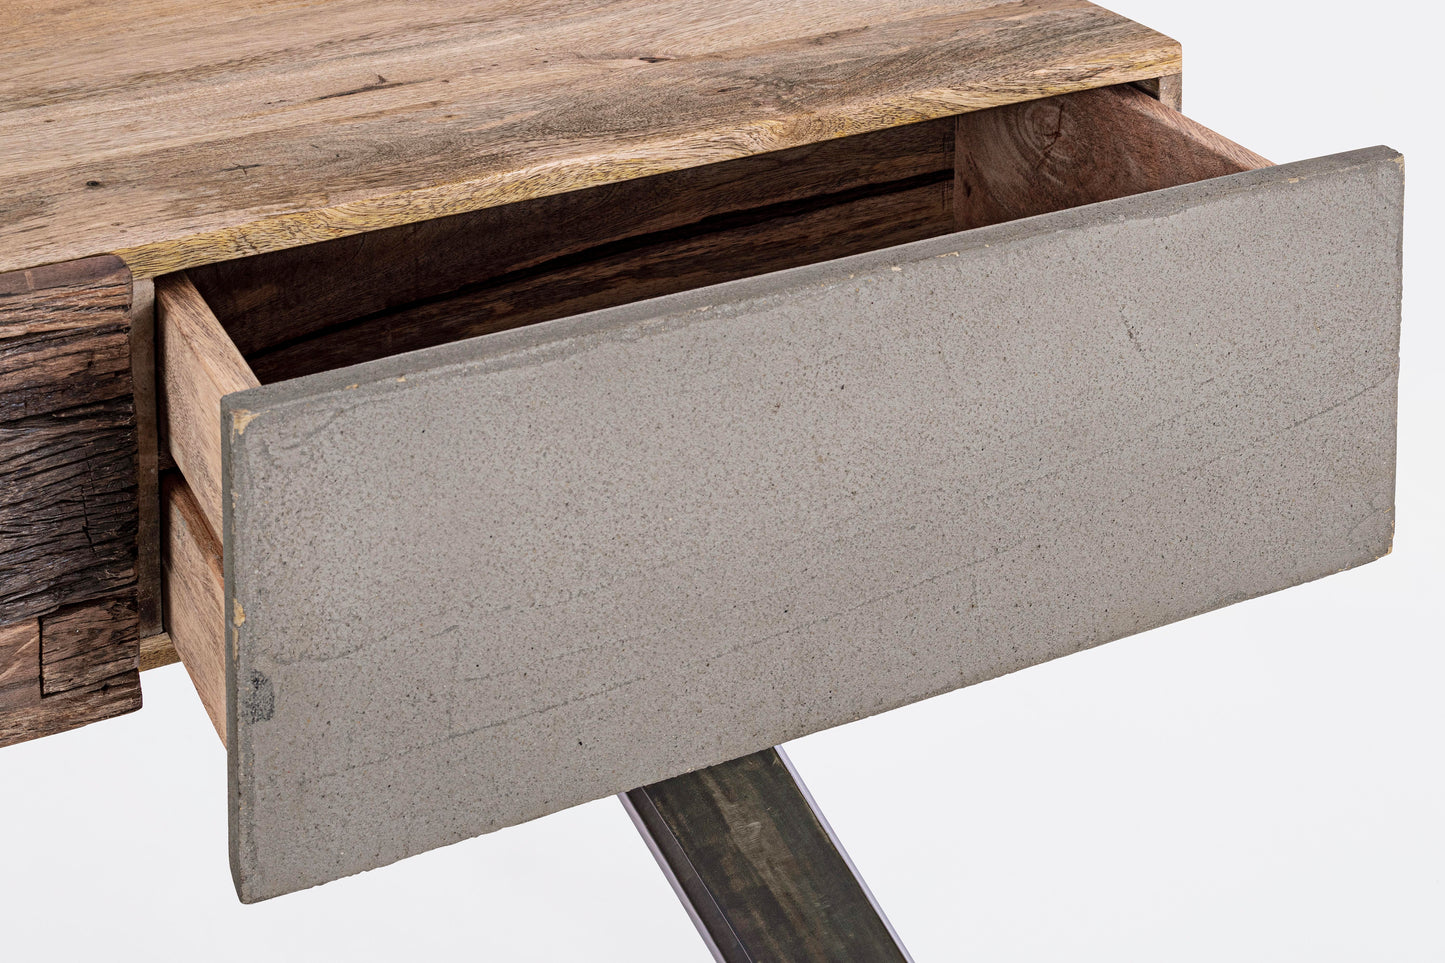 Consolle credenza industrial con frontali in legno ferro e cemento 2 cassetti